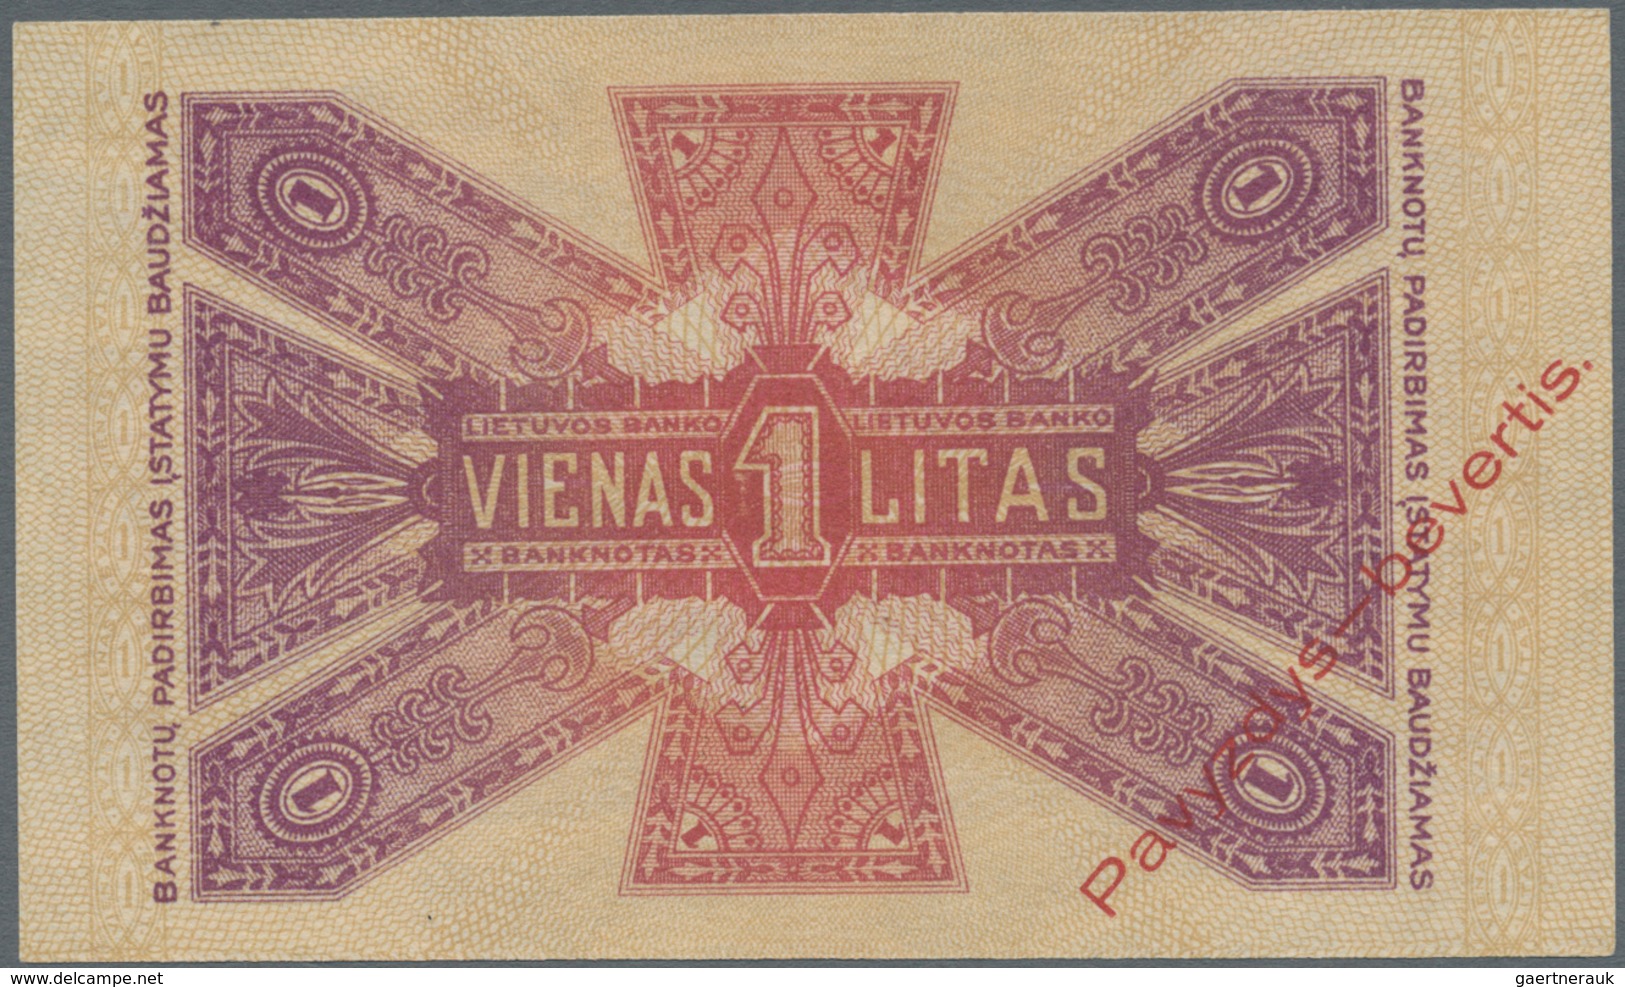 Lithuania / Litauen: 1 Litas 1922 SPECIMEN With Red Overprint "Pavyzdys - Bevertis", P.13s1 In Perfe - Litauen